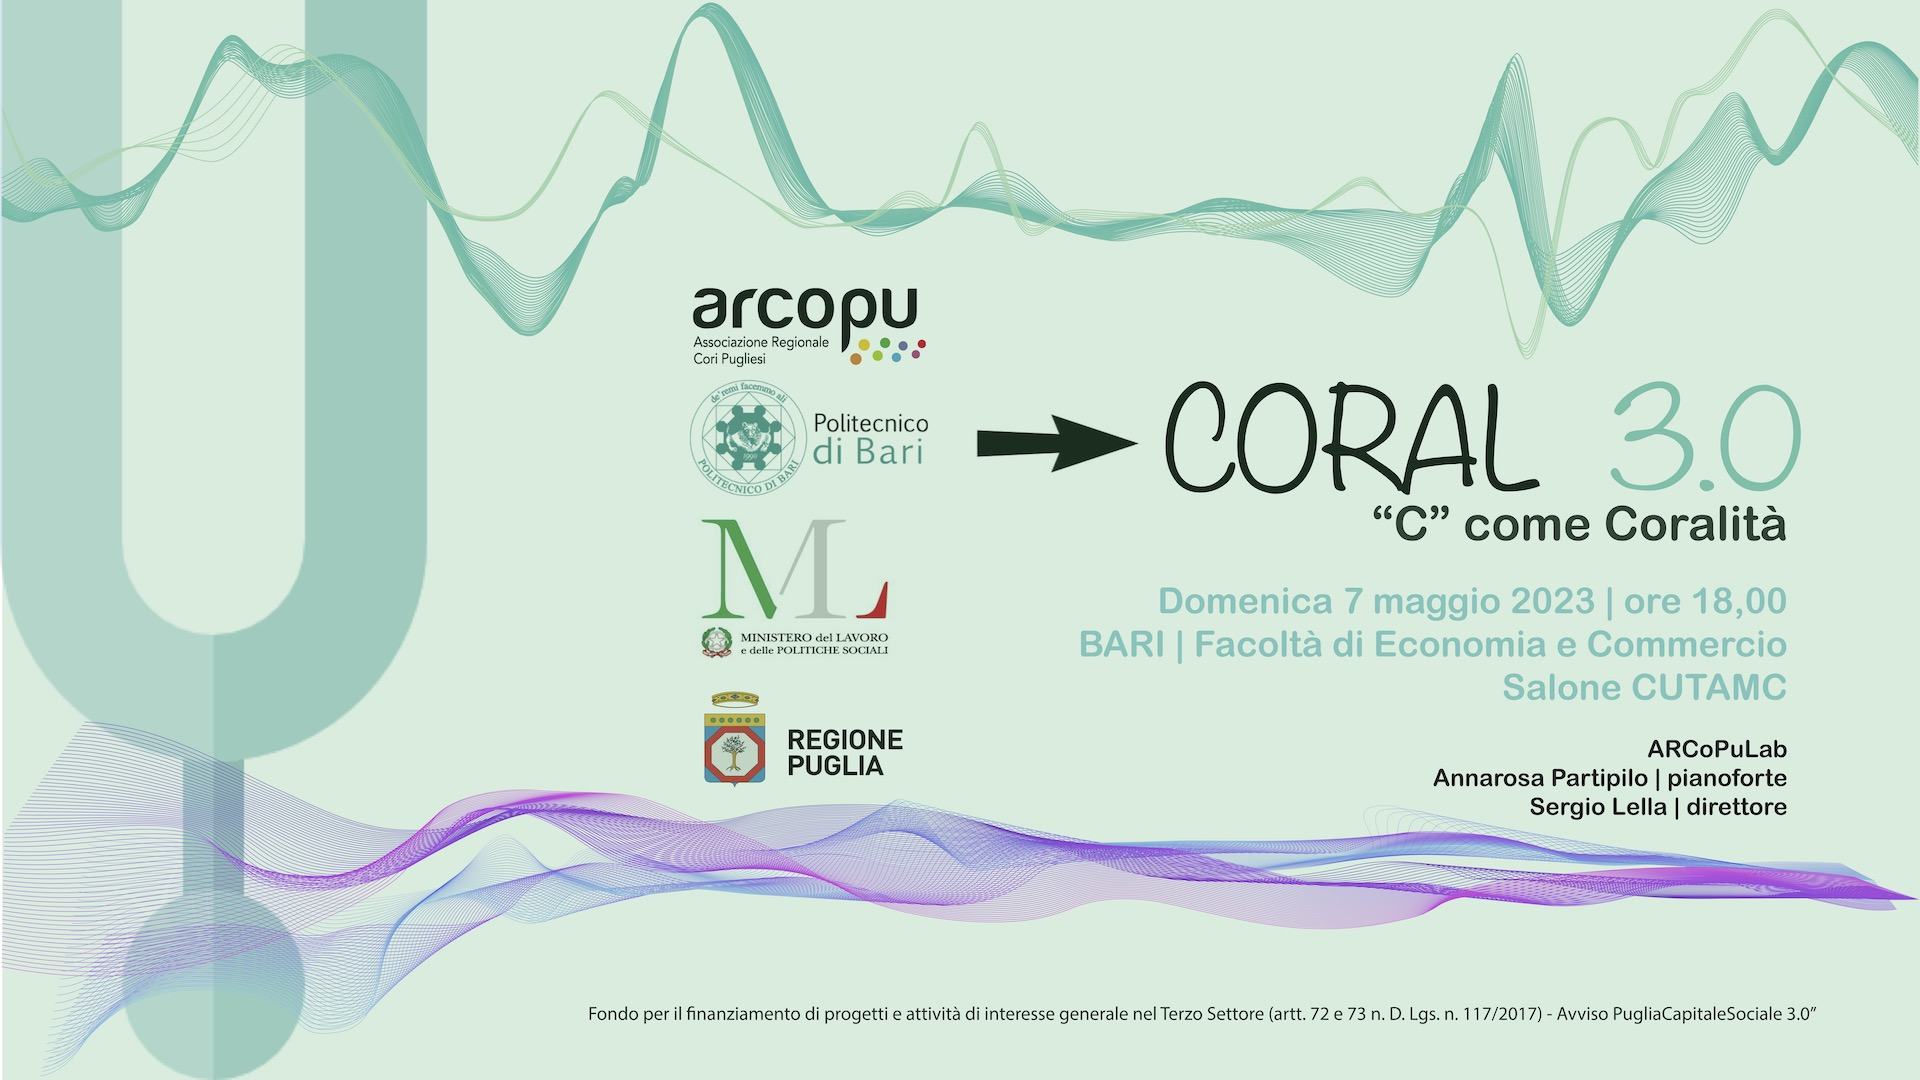 CORAL3.0_Grafica_Web1920x1080_C_come_Coralità_Concerto_del_ARCoPuLab_del_7mag2023.jpg